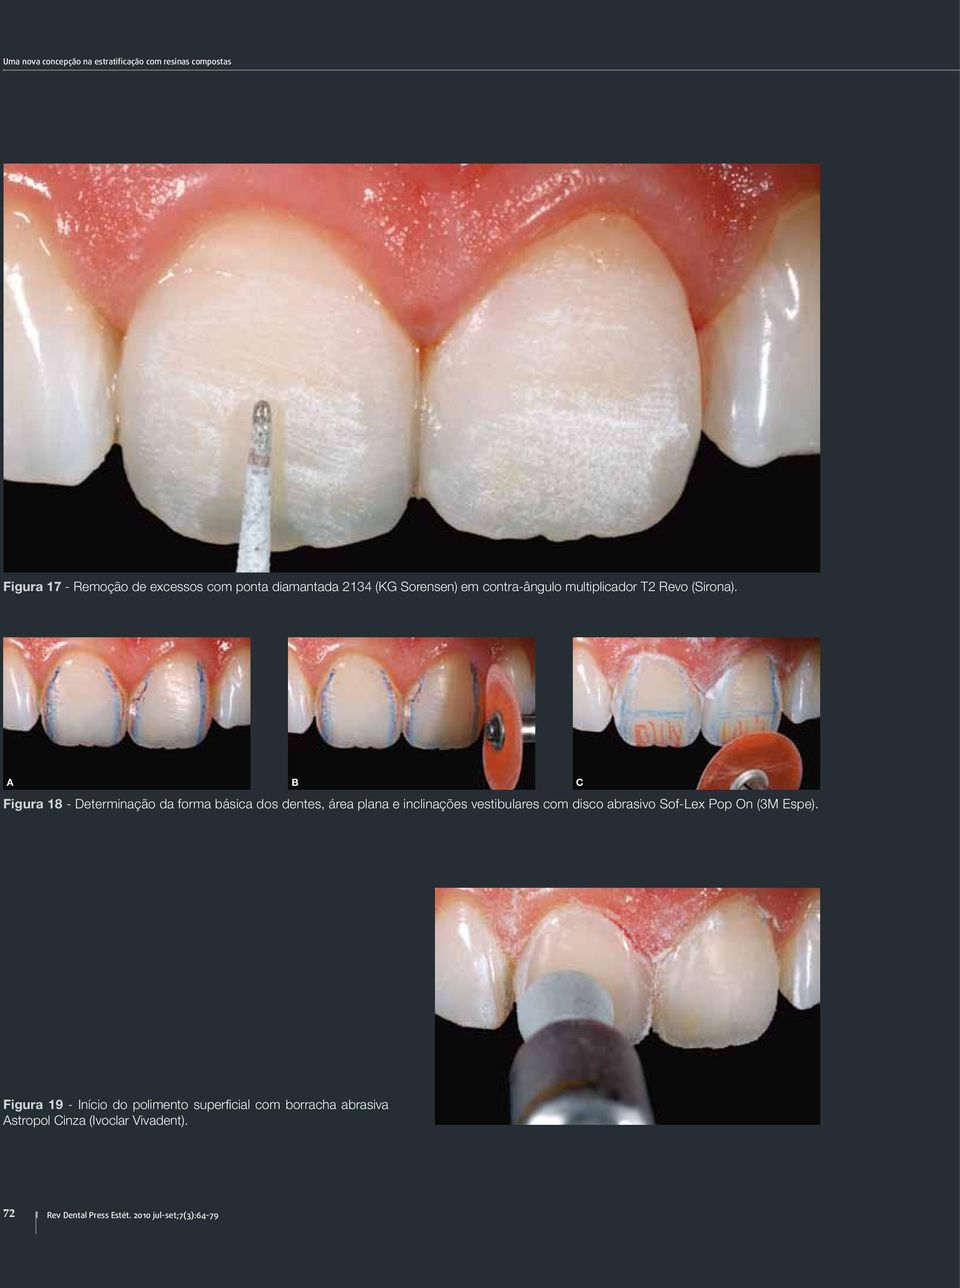 C Figura 18 - Determinação da forma básica dos dentes, área plana e inclinações vestibulares com disco abrasivo